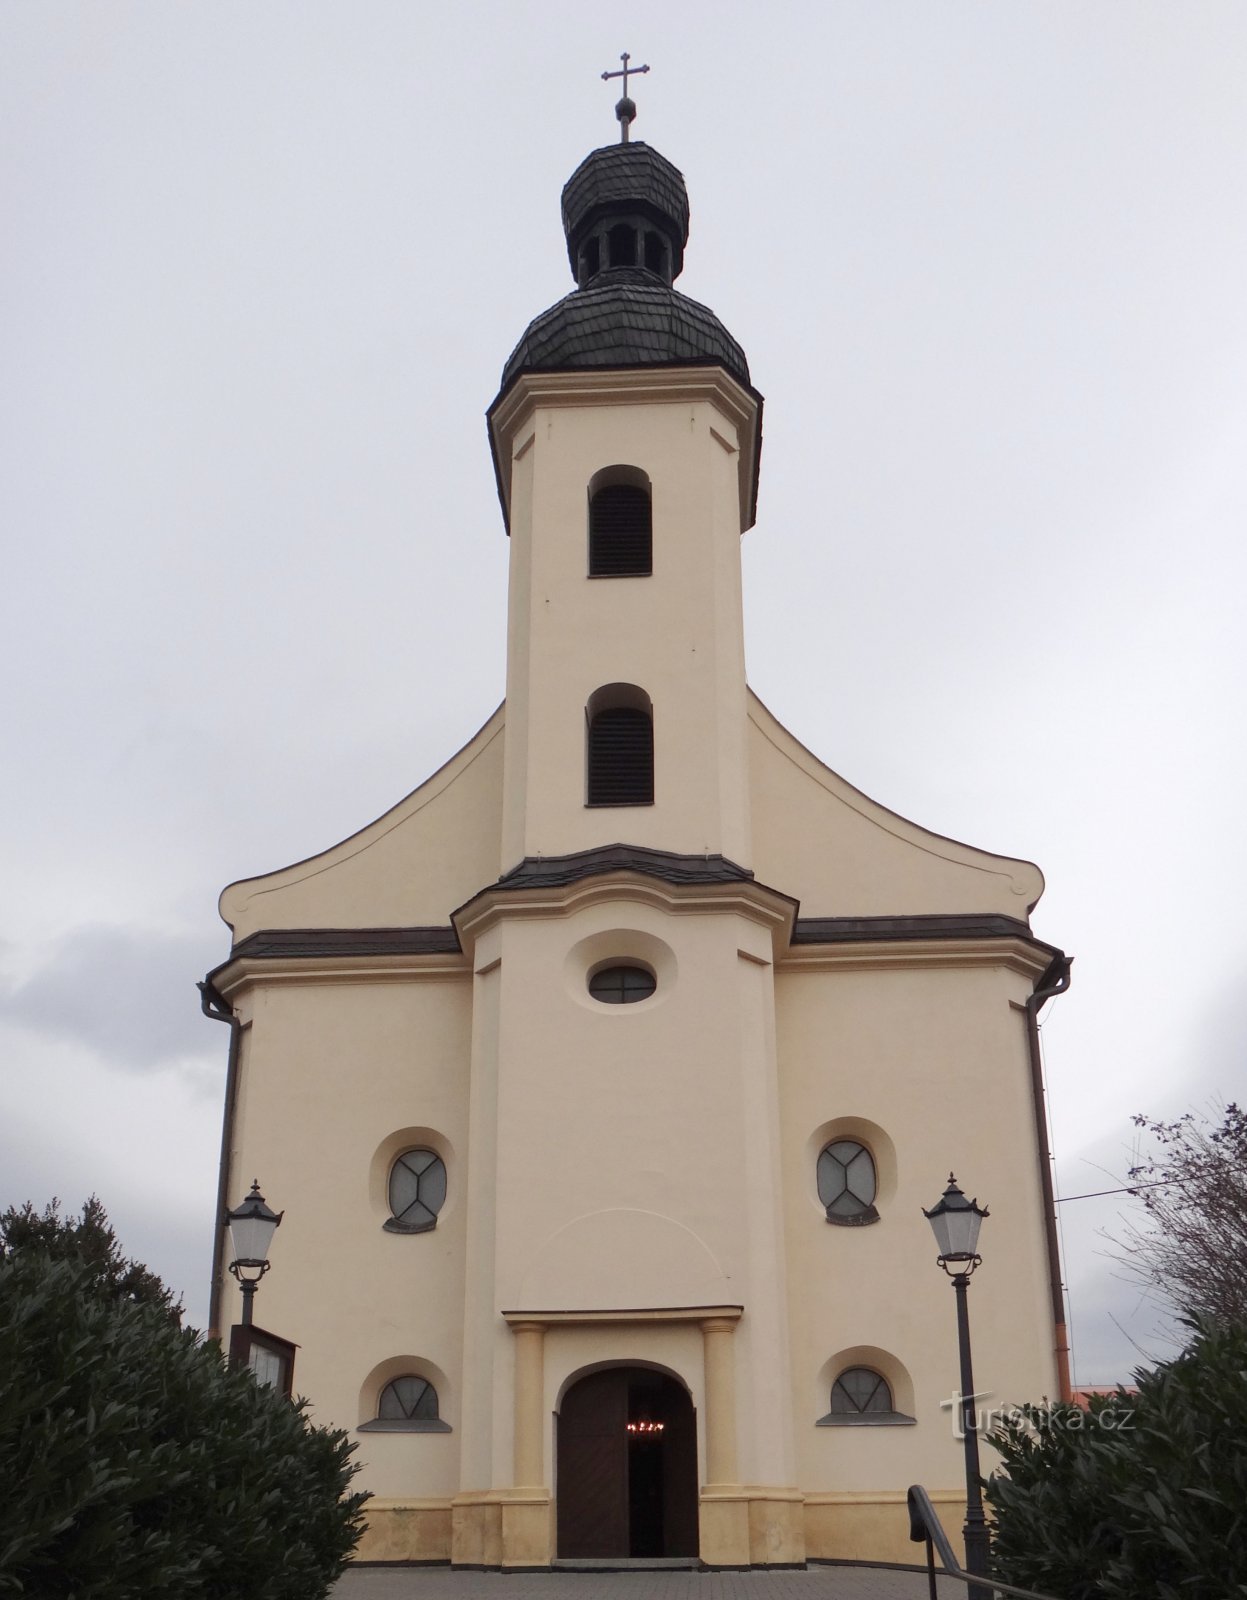 Hlúčín - kerk van St. Markten